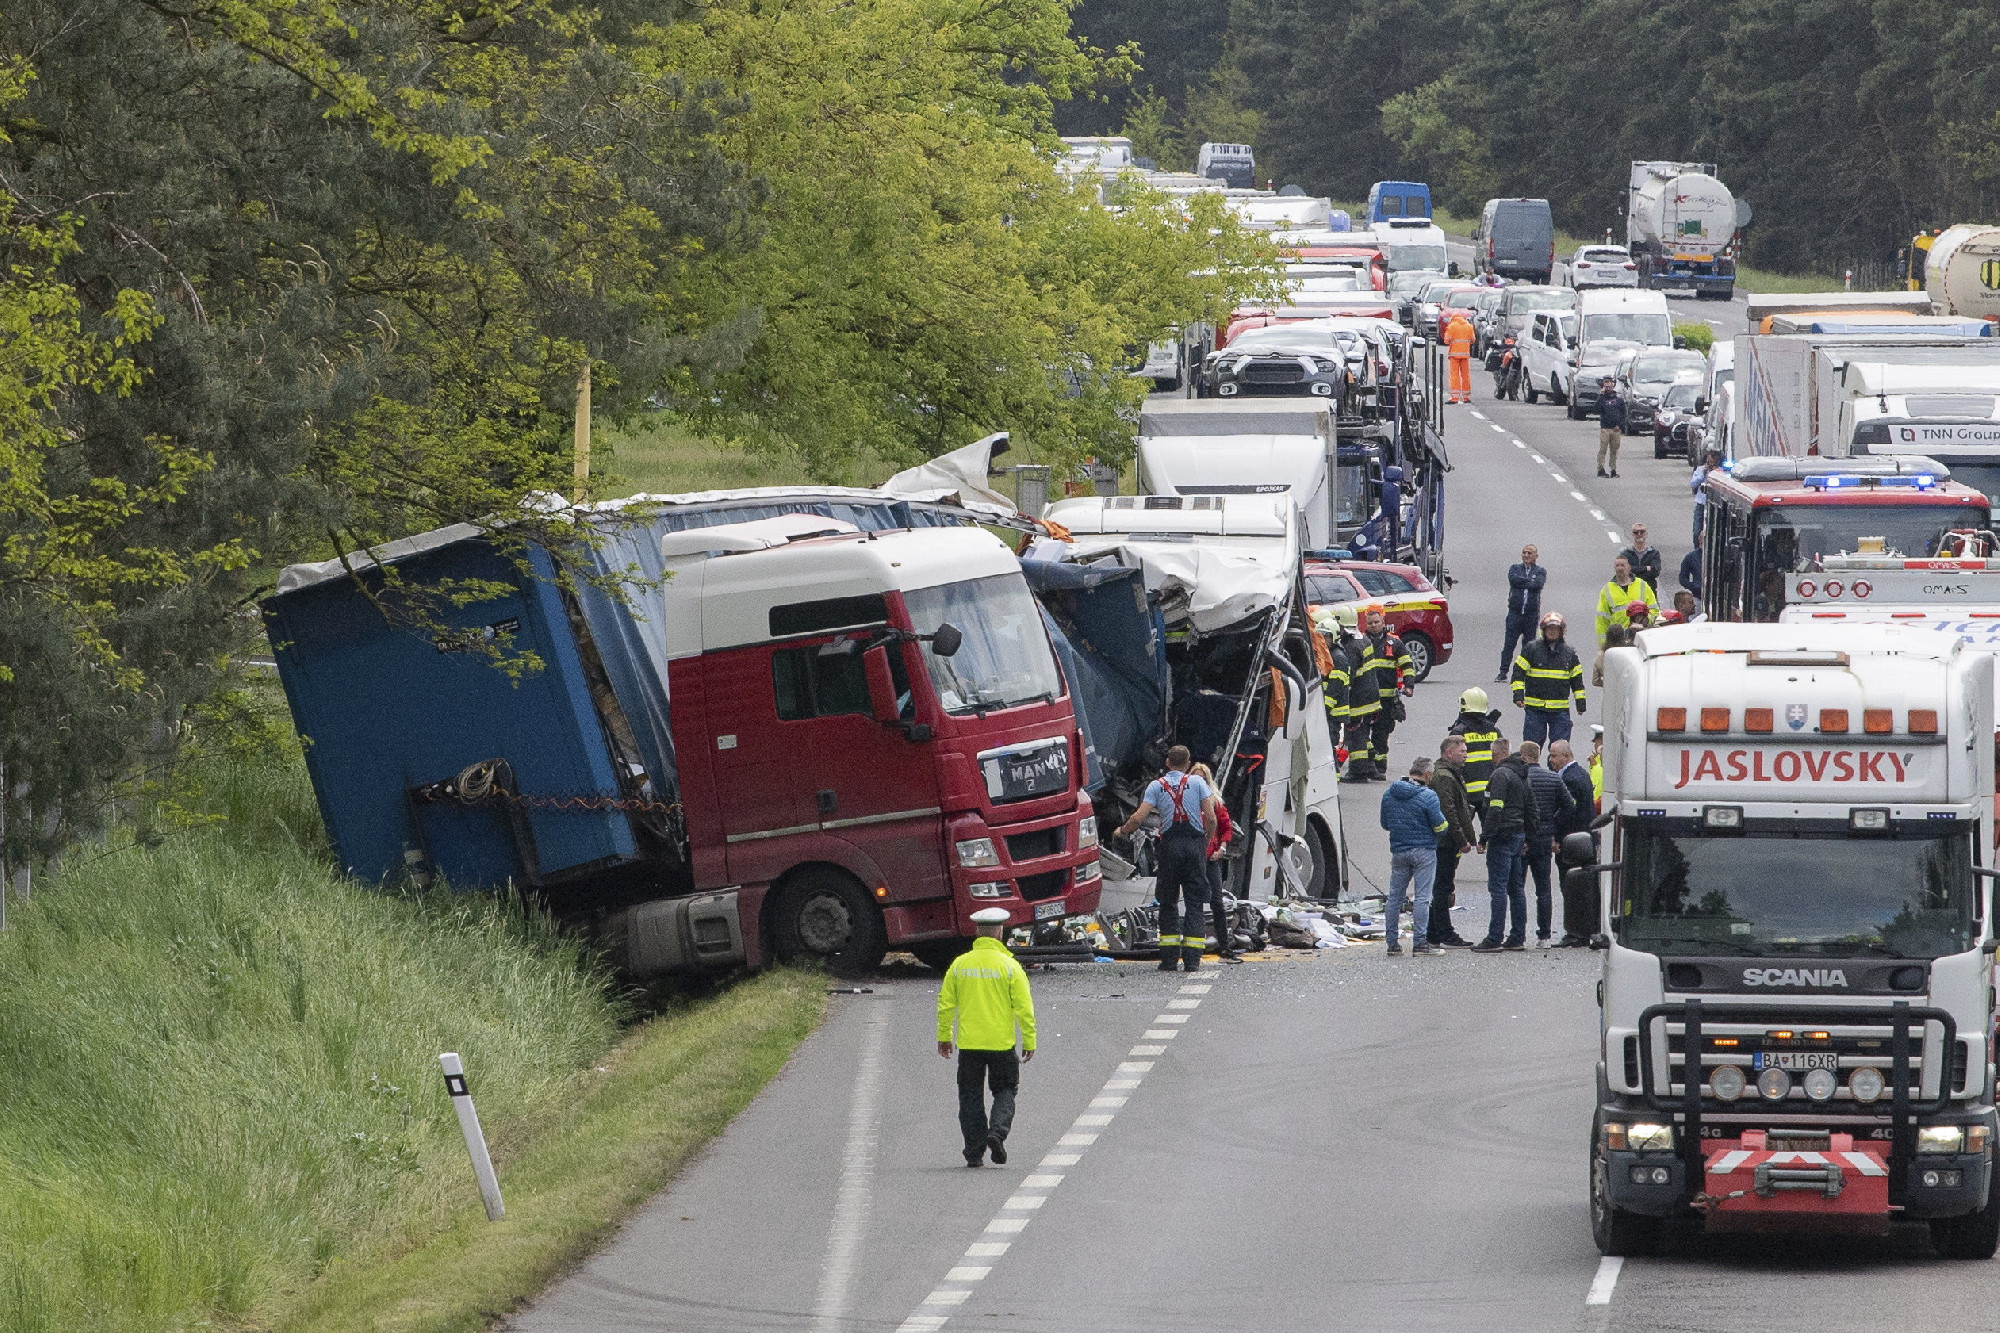 Magyar busz balesete Szlovákiában: ismeretlen tettes ellen indult büntetőeljárás